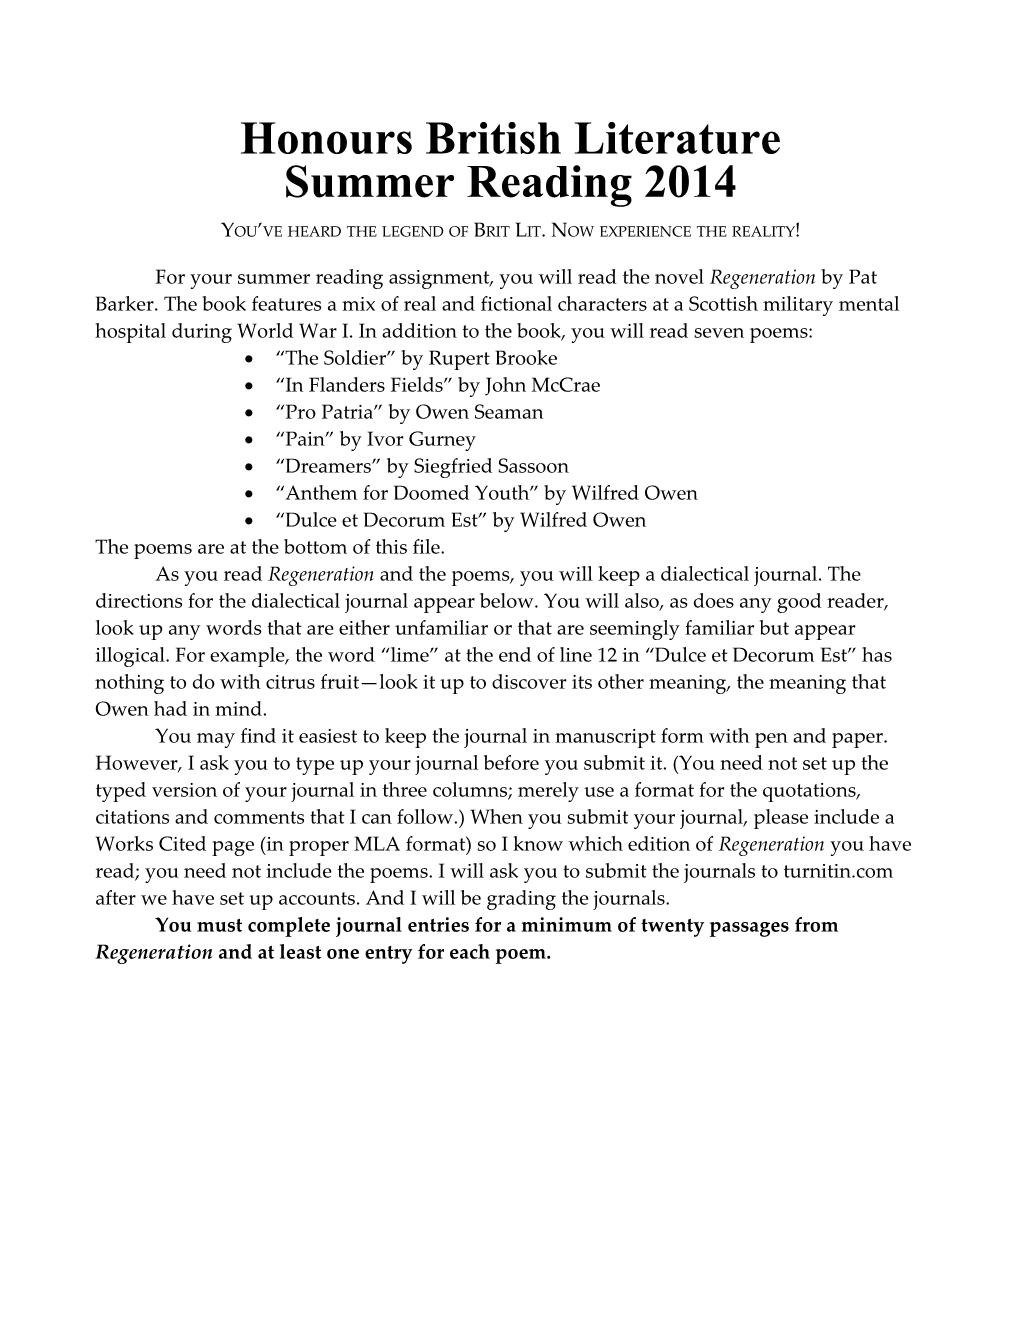 Honours British Literature Summer Reading 2014